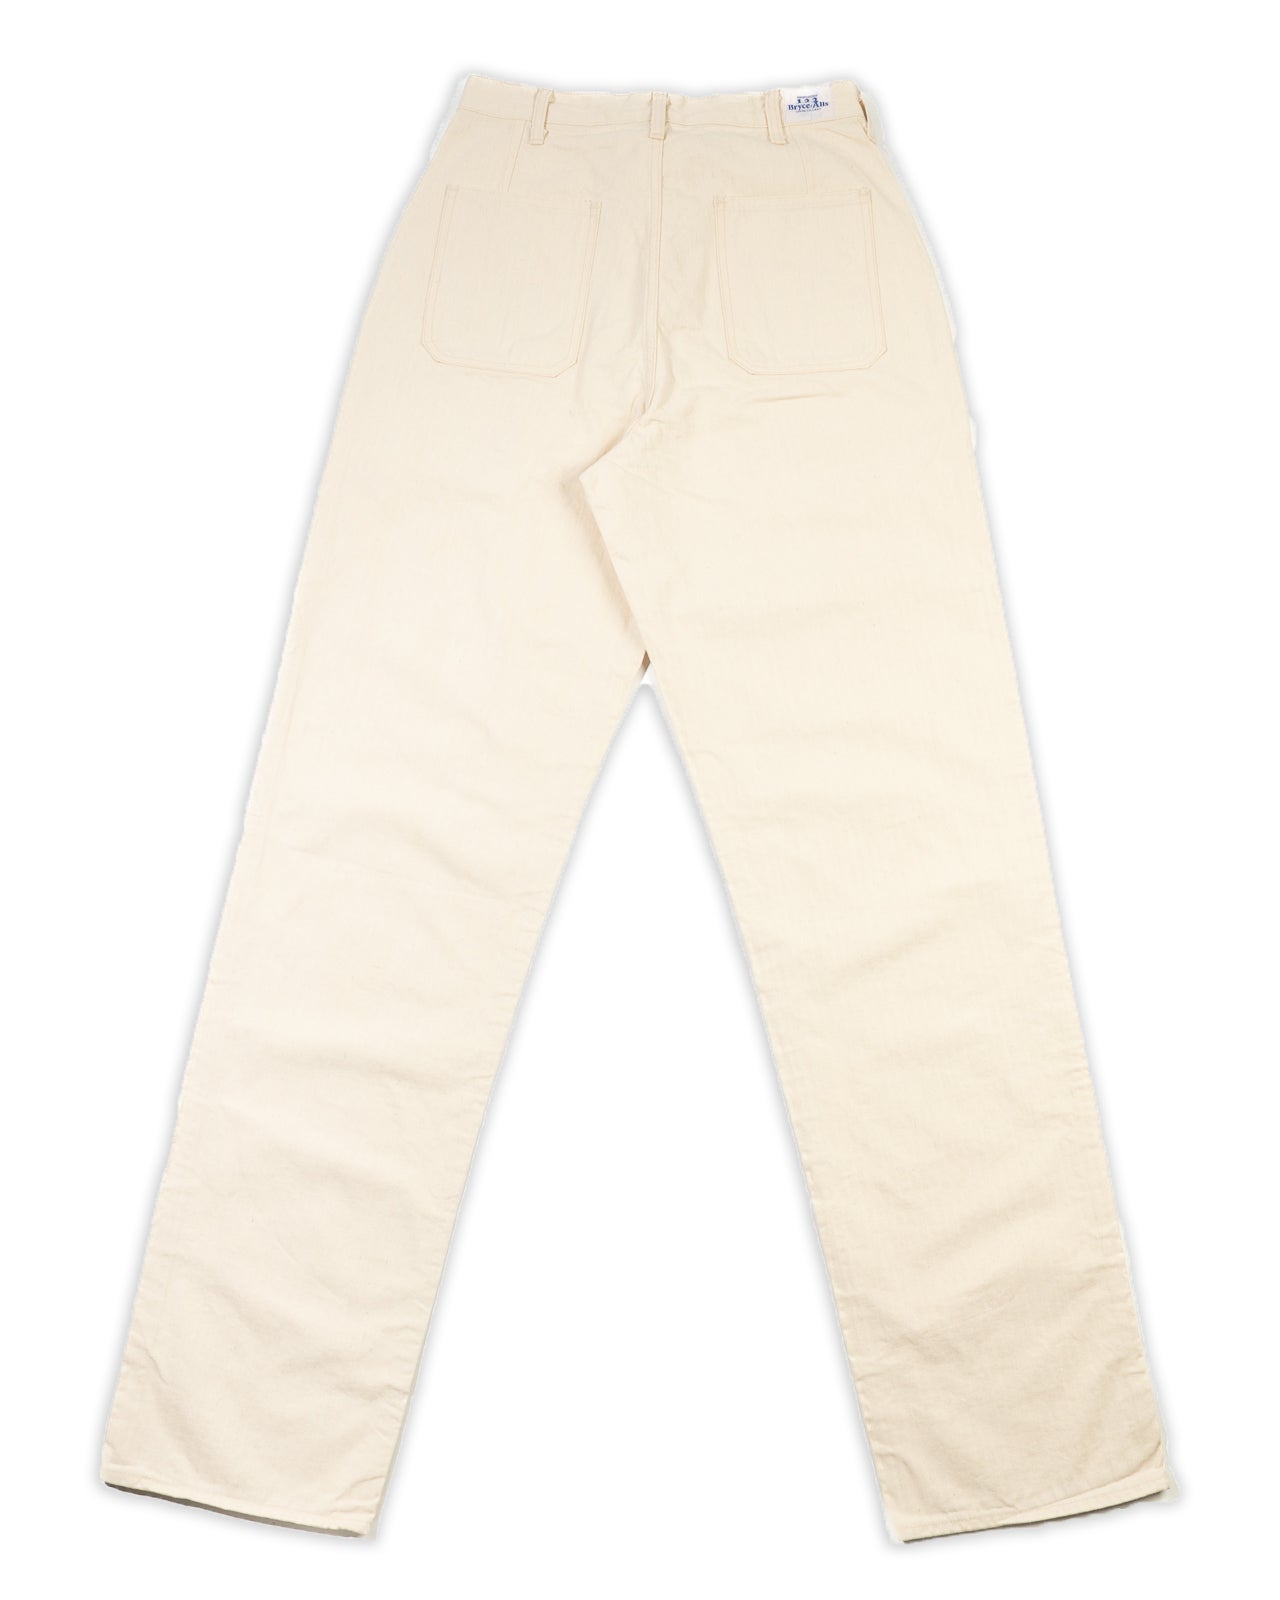 Bryceland's Co USN Deck Pant - Ecru (Washed) – Standard & Strange